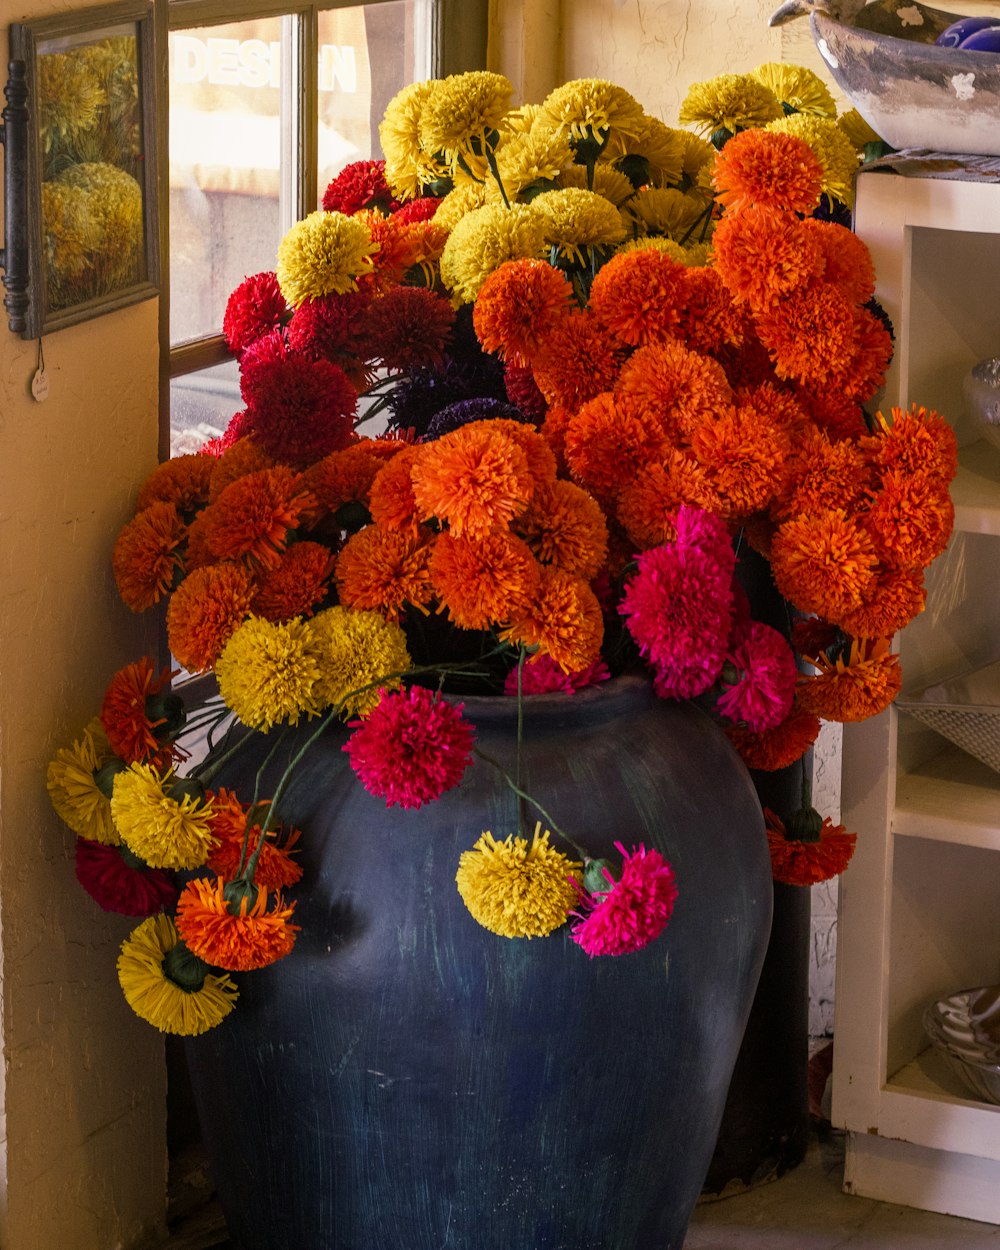 Un grand vase rempli de nombreuses fleurs colorées